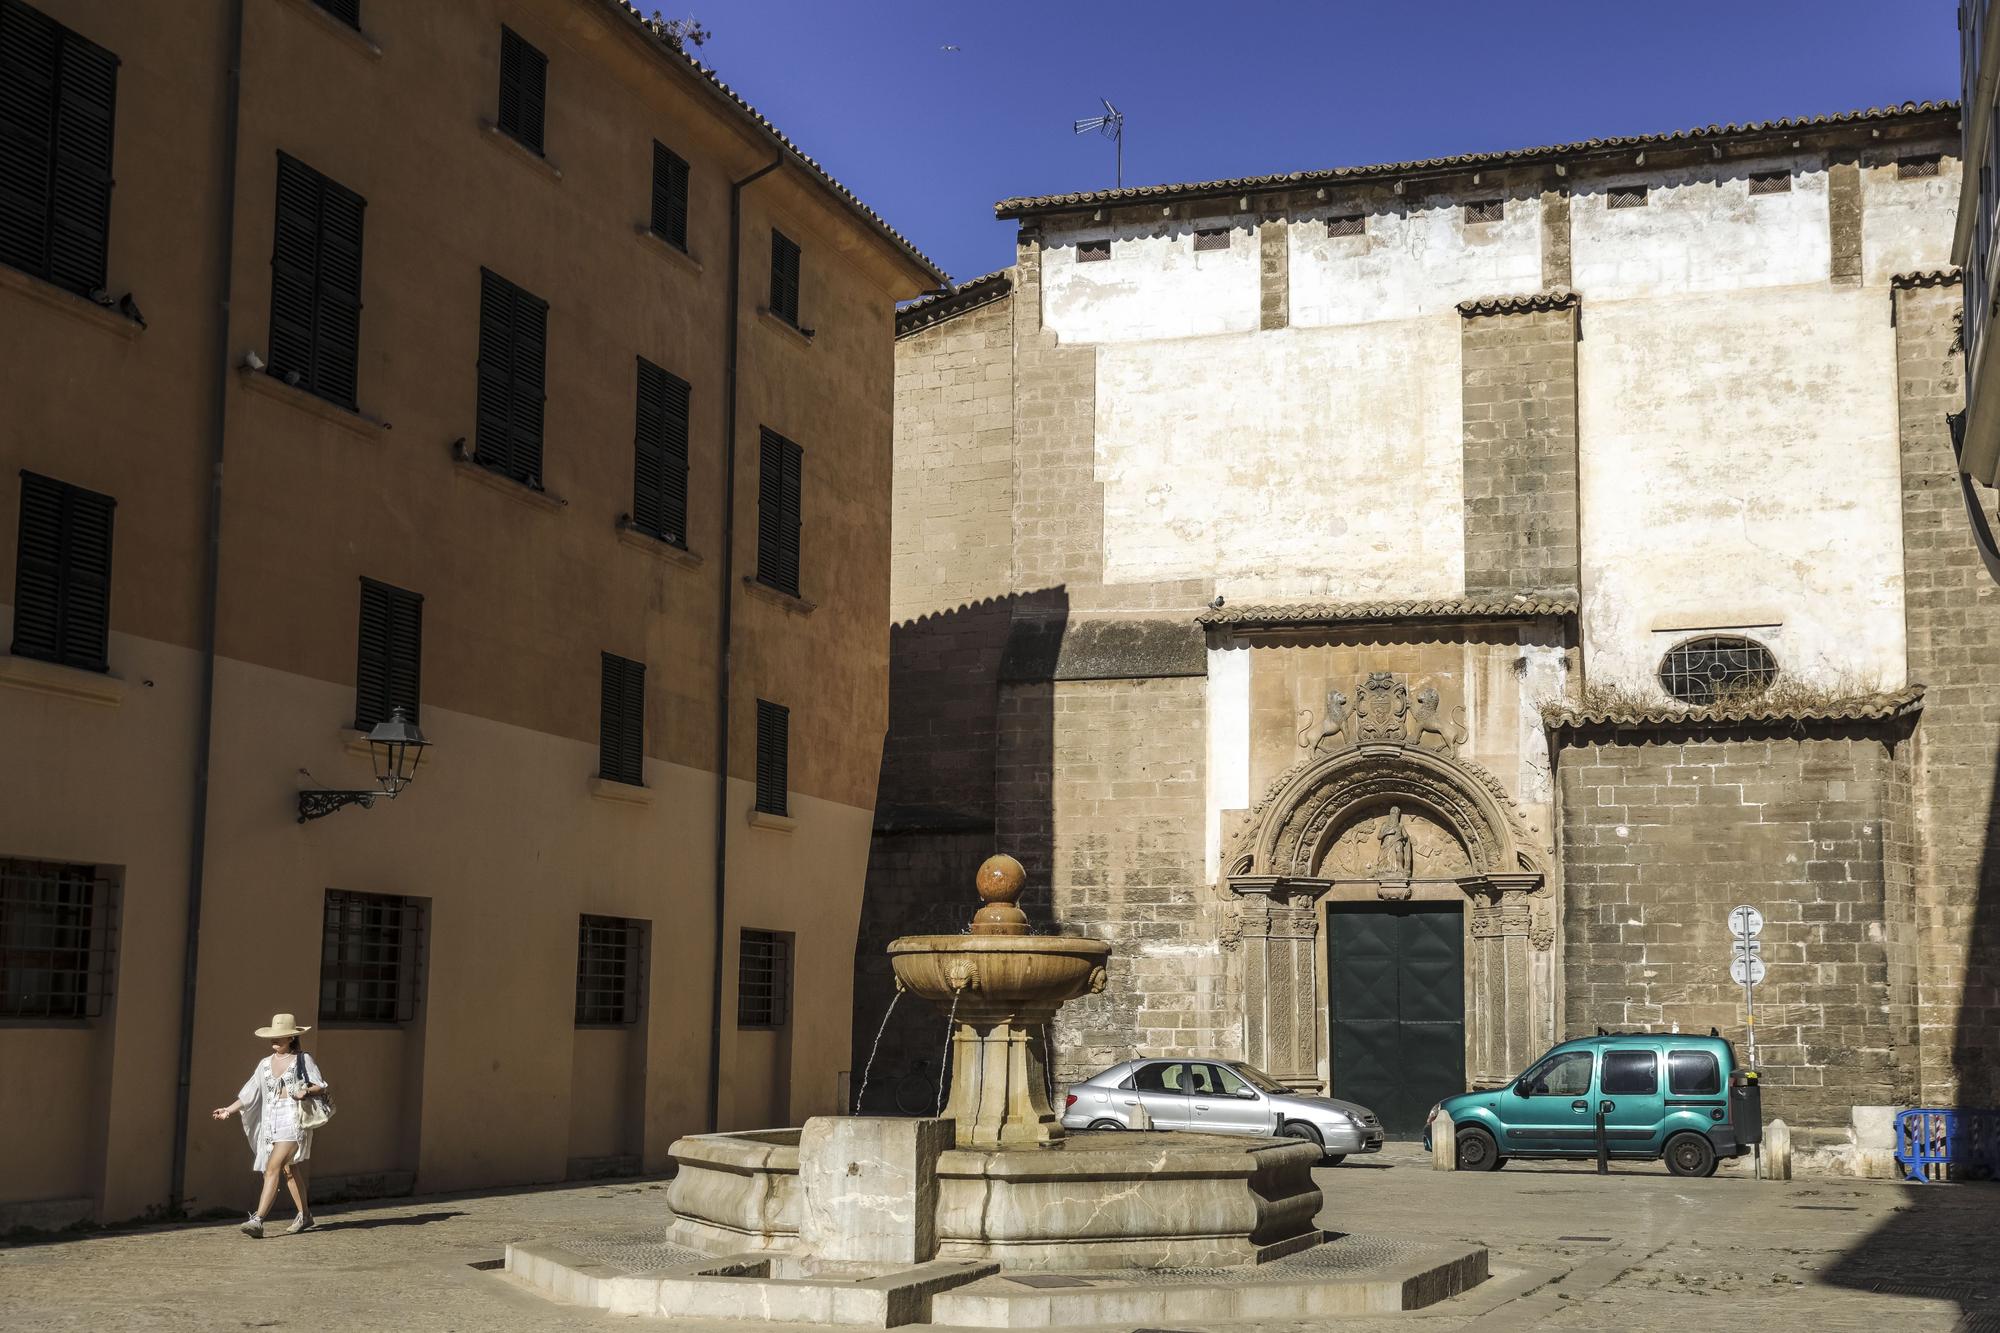 El convento de Sant Jeroni de Palma es propiedad de la orden de monjas Jerónimas que lo habitaban hasta hace unos años